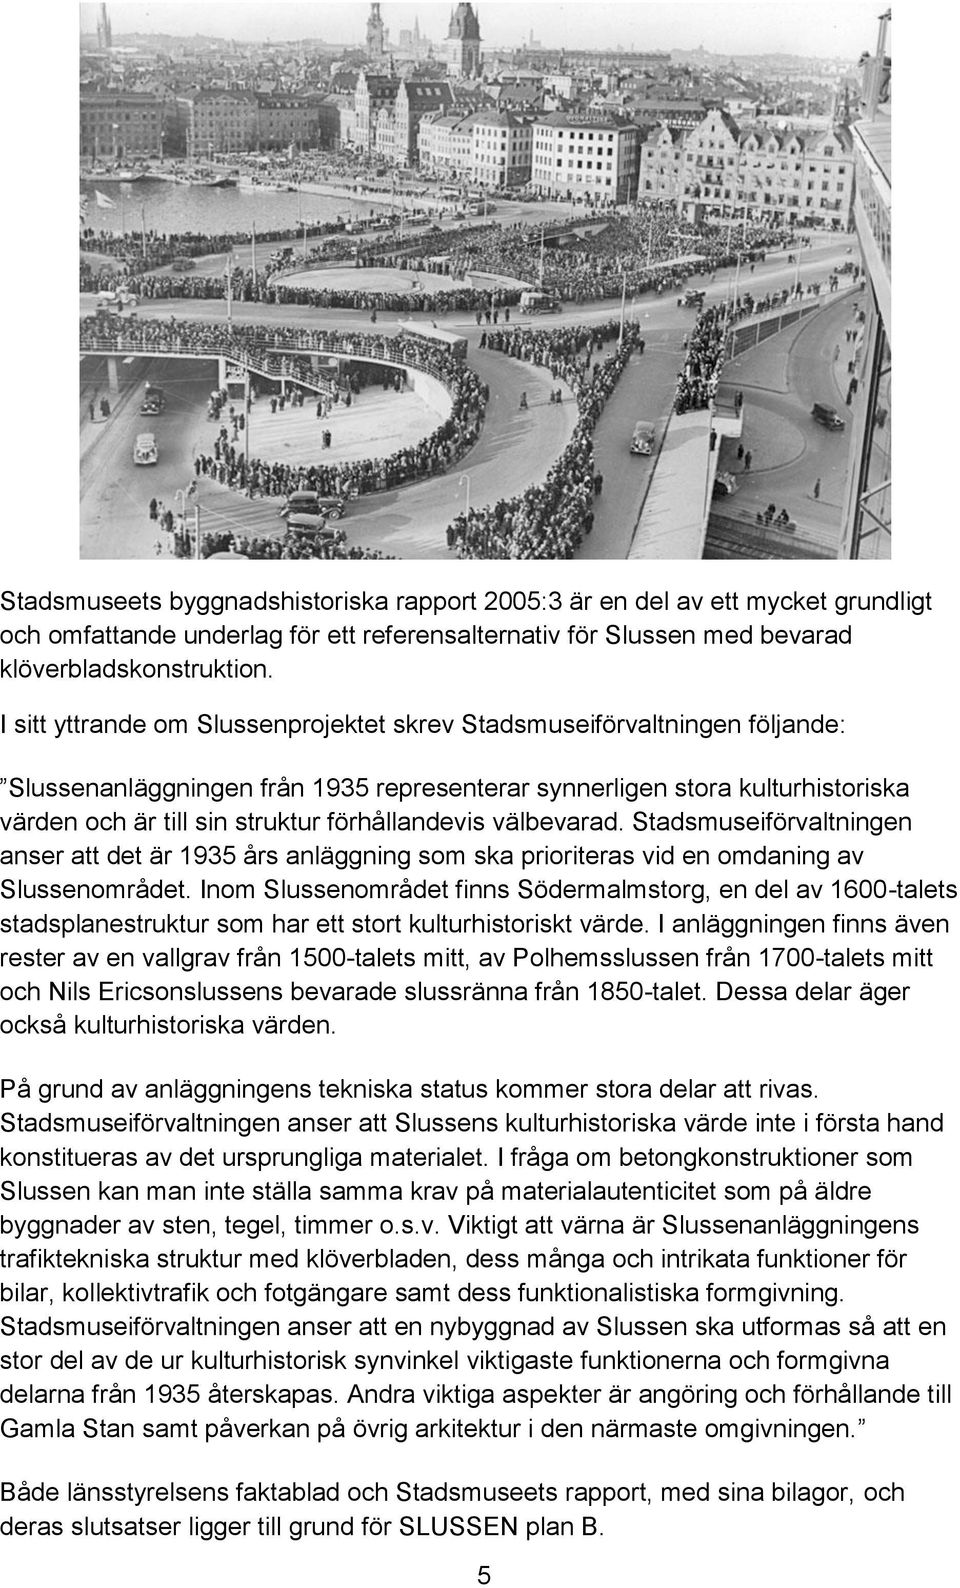 förhållandevis välbevarad. Stadsmuseiförvaltningen anser att det är 1935 års anläggning som ska prioriteras vid en omdaning av Slussenområdet.